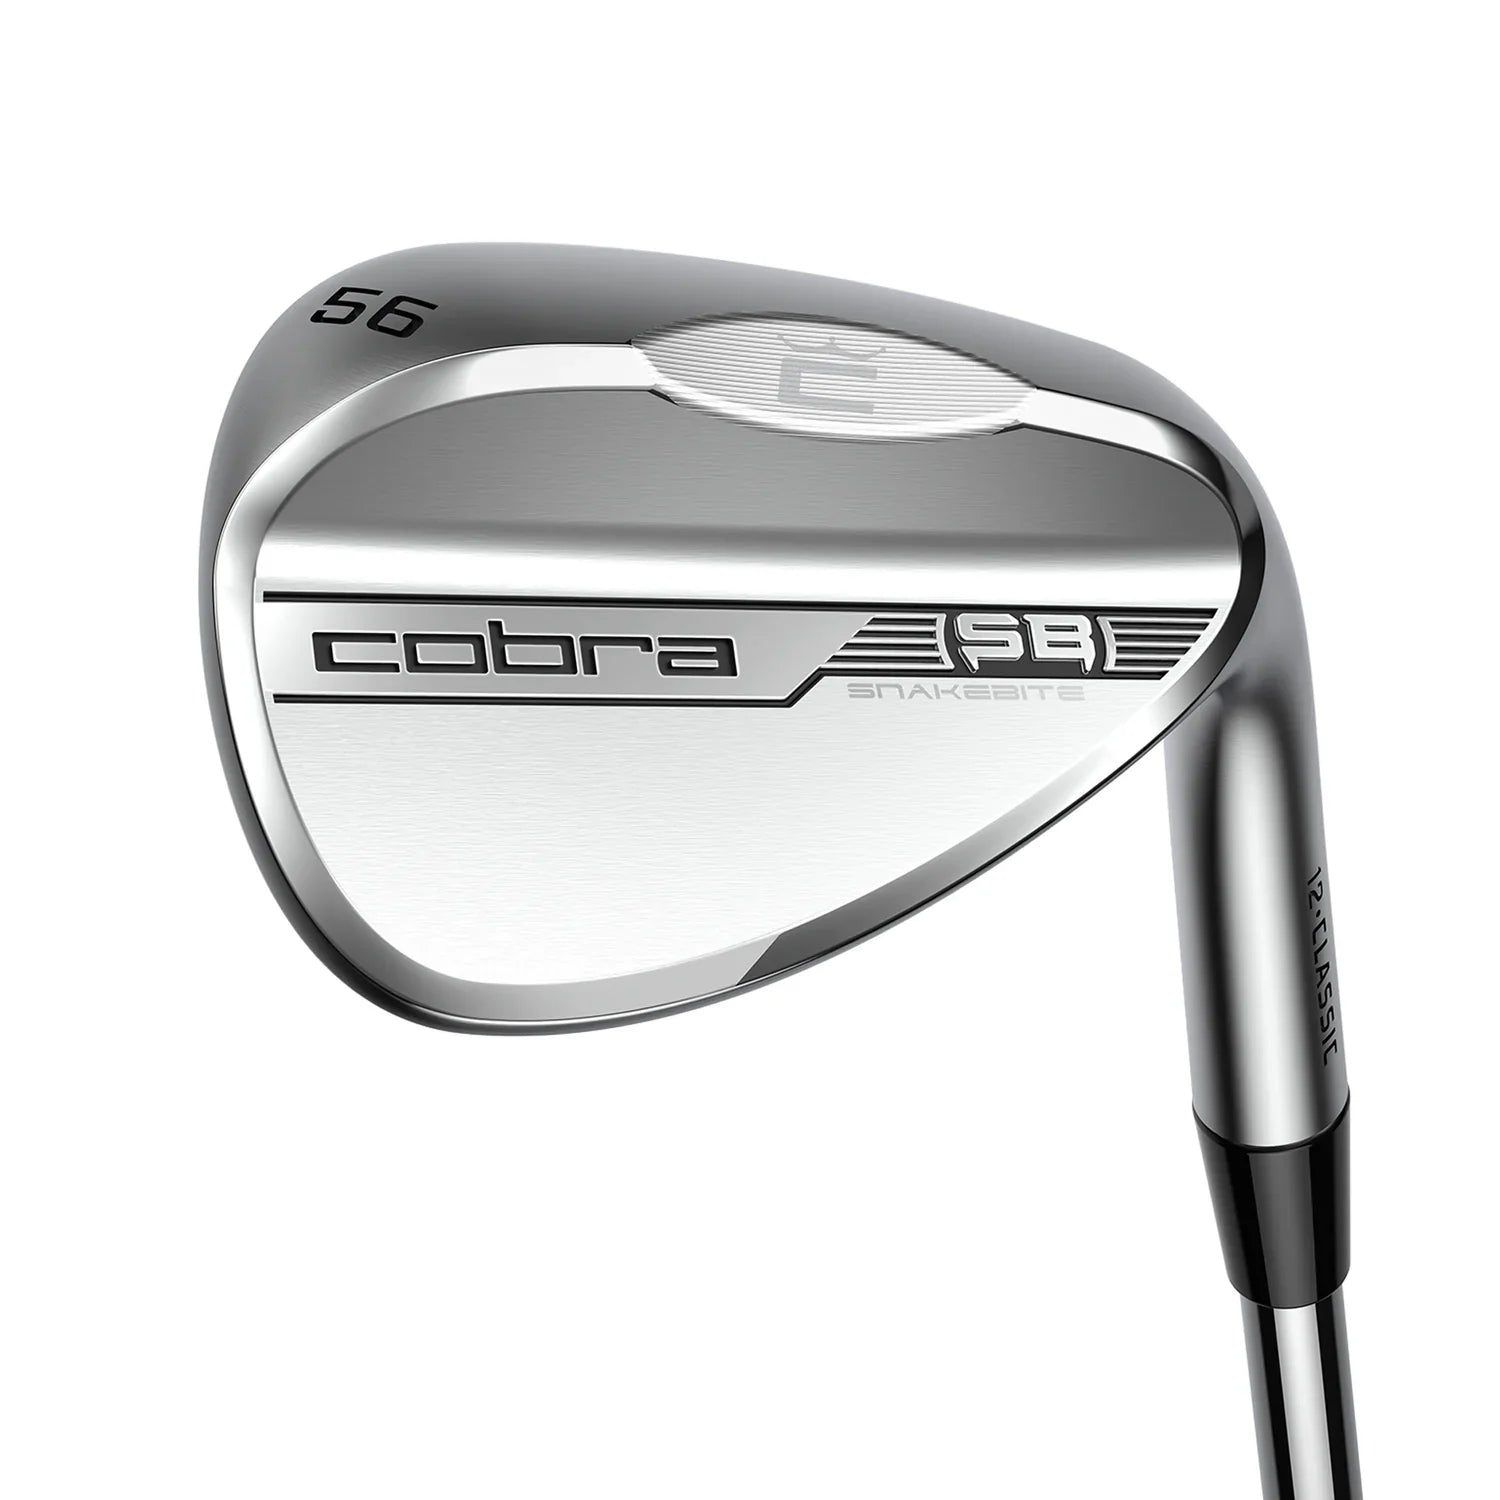 Cobra Left Handed Snakebite Satin Chrome Golf Wedge